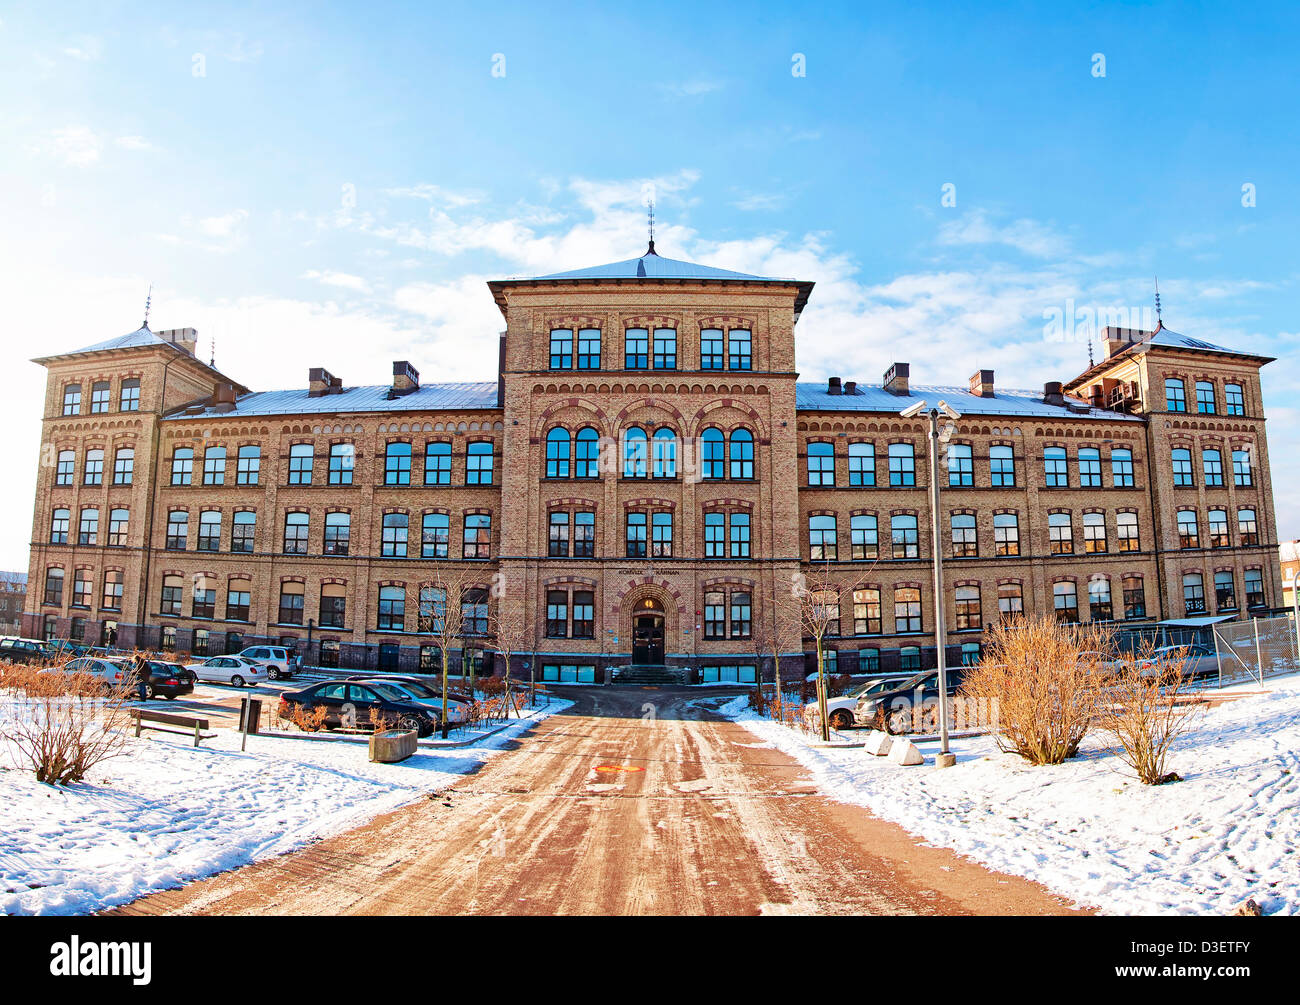 Un panorama de couture une ancienne école dans la ville suédoise d'Helsingborg. Banque D'Images